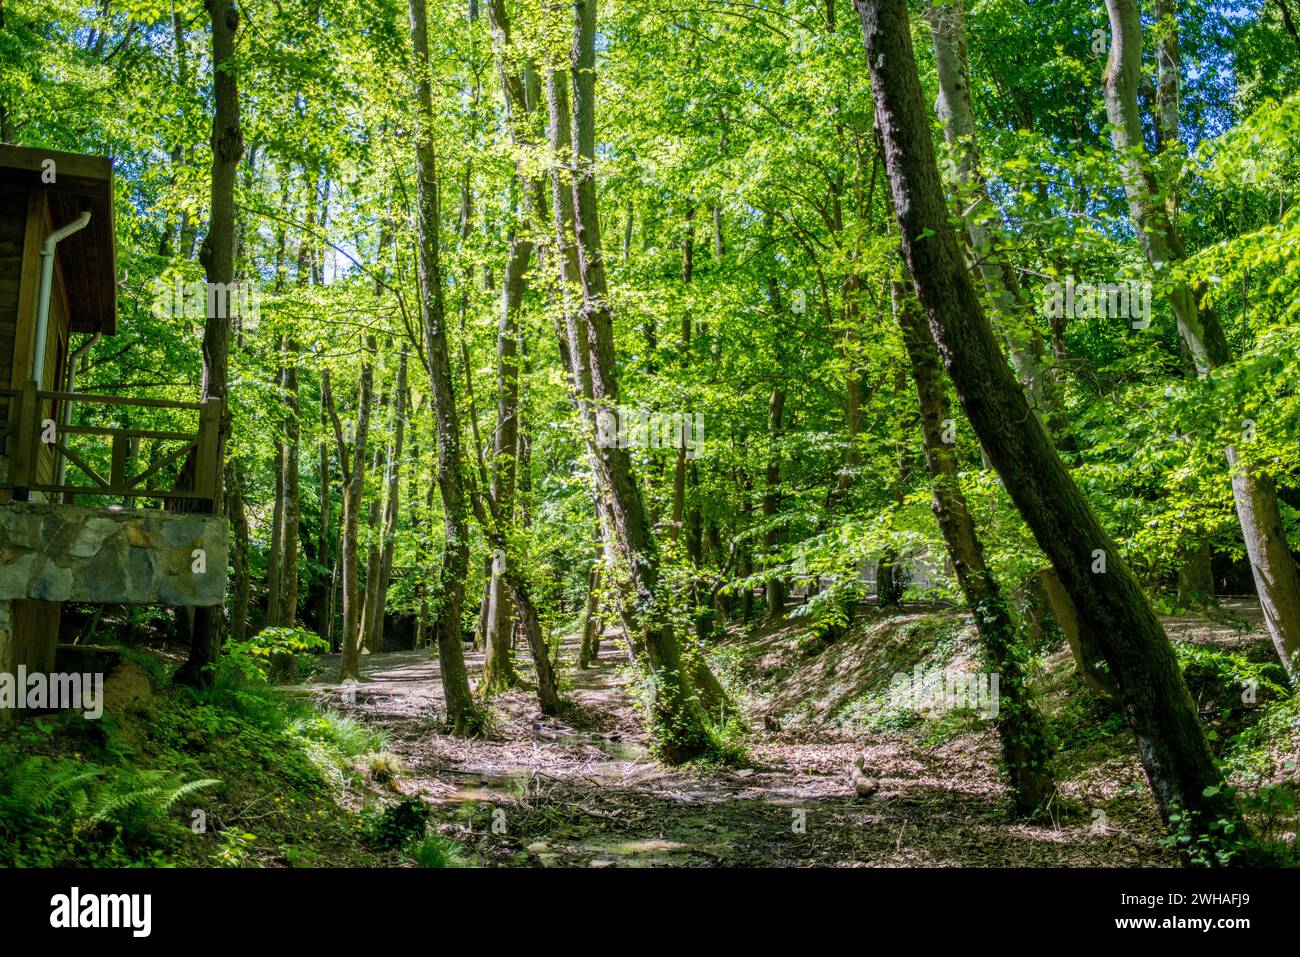 Una foresta tranquilla e verde, un paradiso di tranquillità, che mette in mostra la bellezza della natura e l'armonia pacifica di un fiorente bosco. Foto Stock